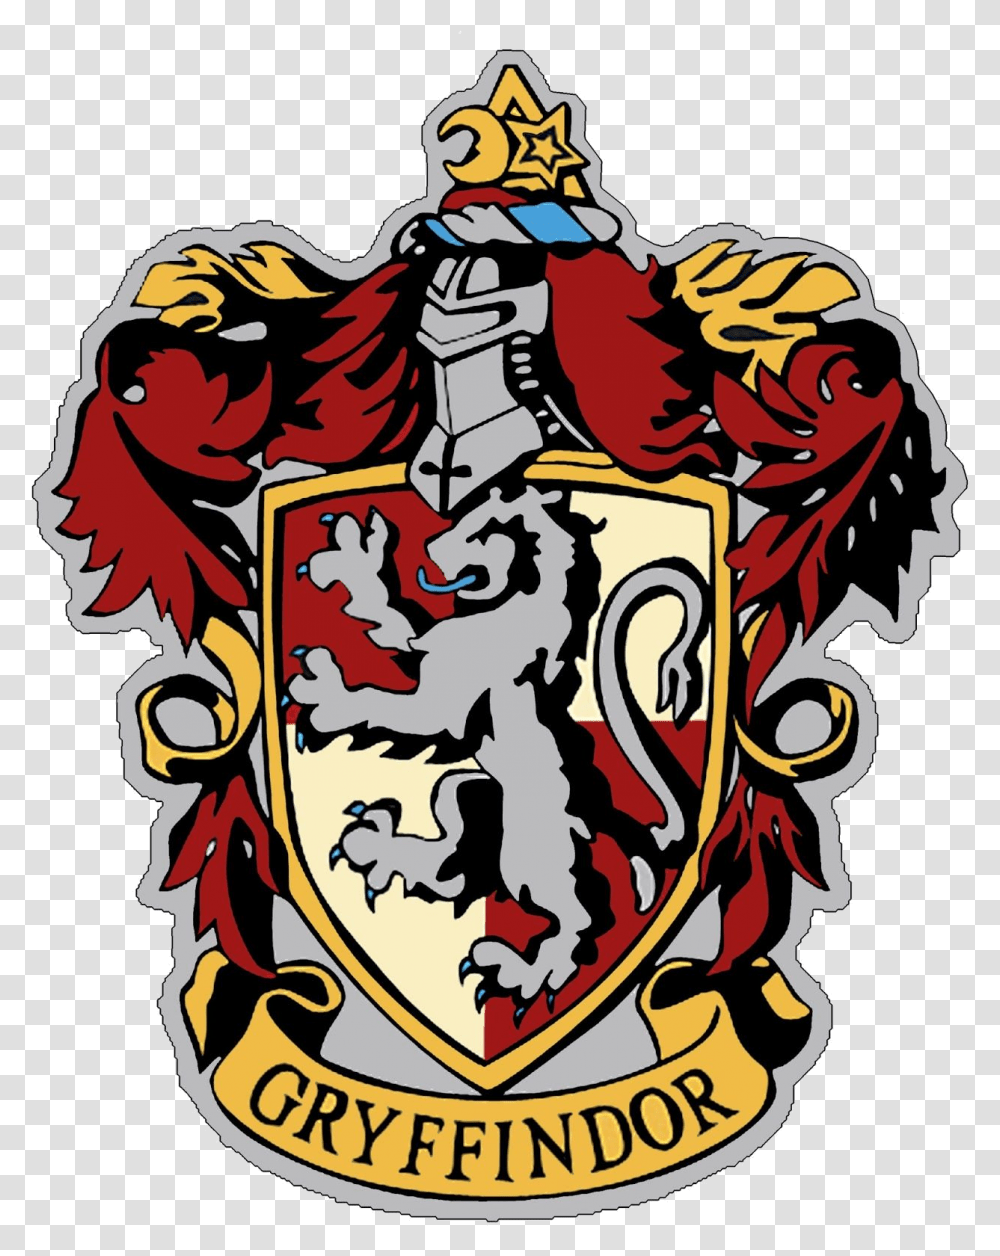 Harry Potter Hogwarts Clipart At Free For Personal Gryffindor Crest To Print, Emblem, Logo, Trademark Transparent Png